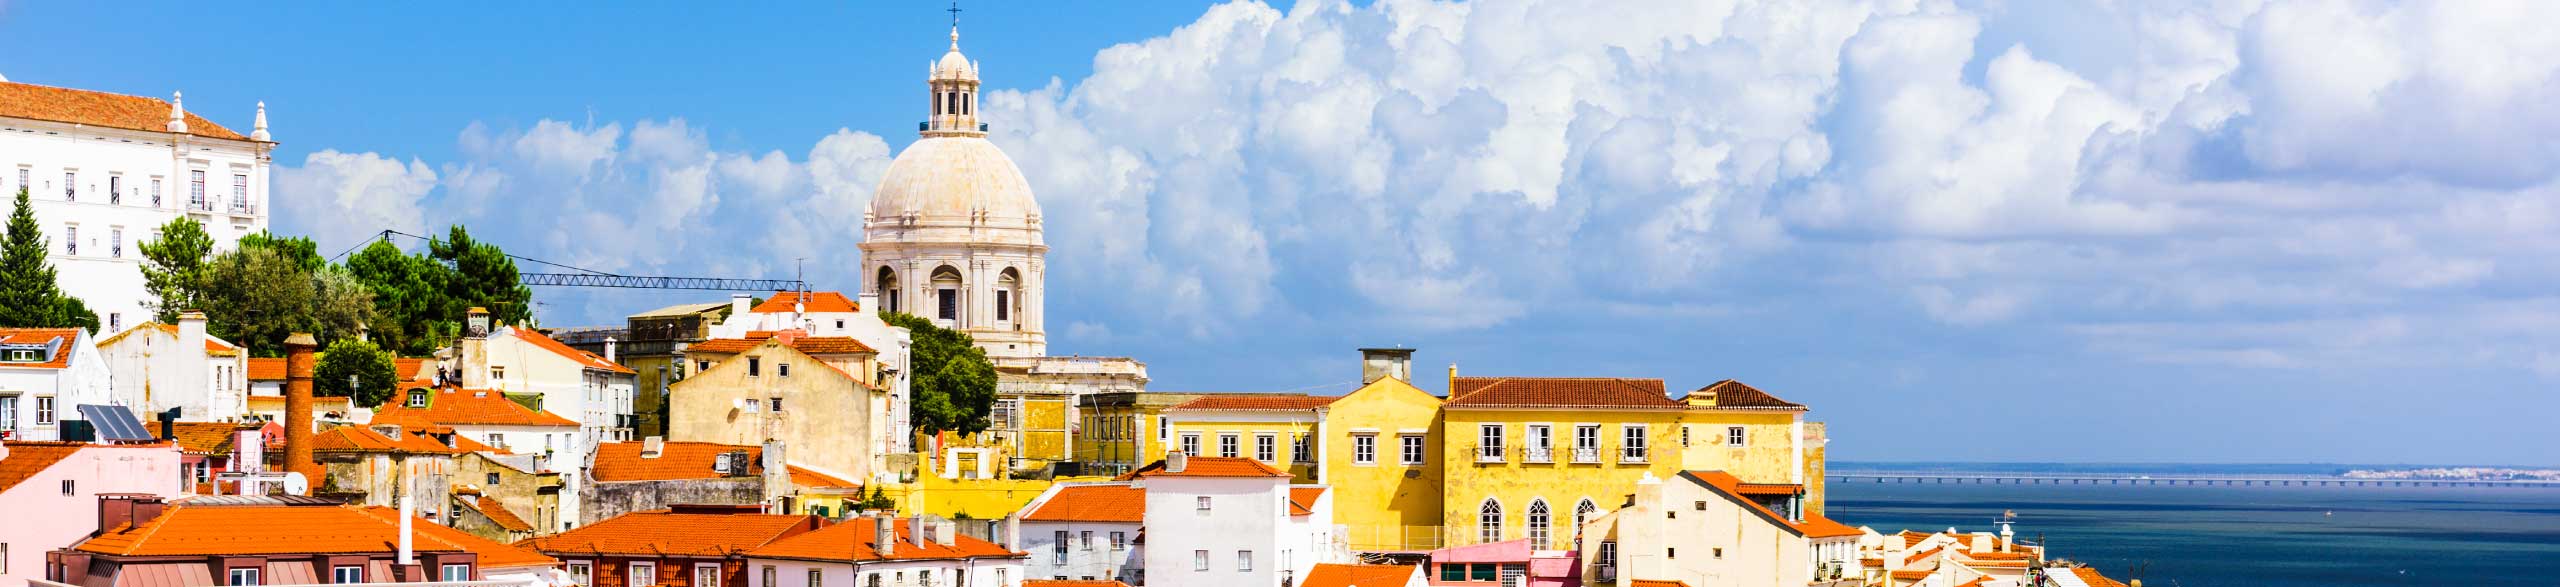 Vivez votre plus belle expérience de visite à Lisbonne